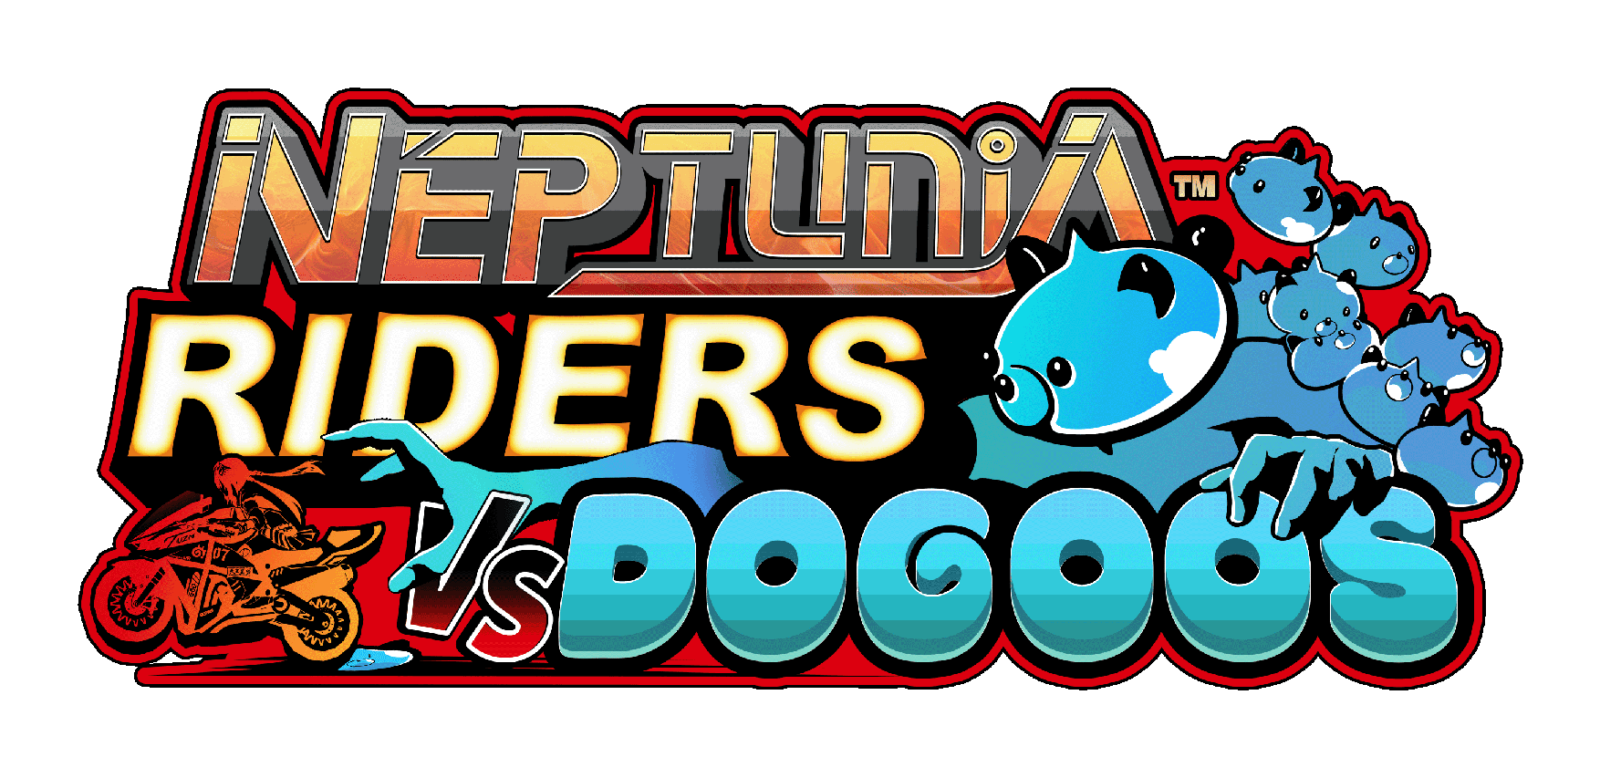 Neptunia Riders VS Dogoos é anunciado para Nintendo Switch